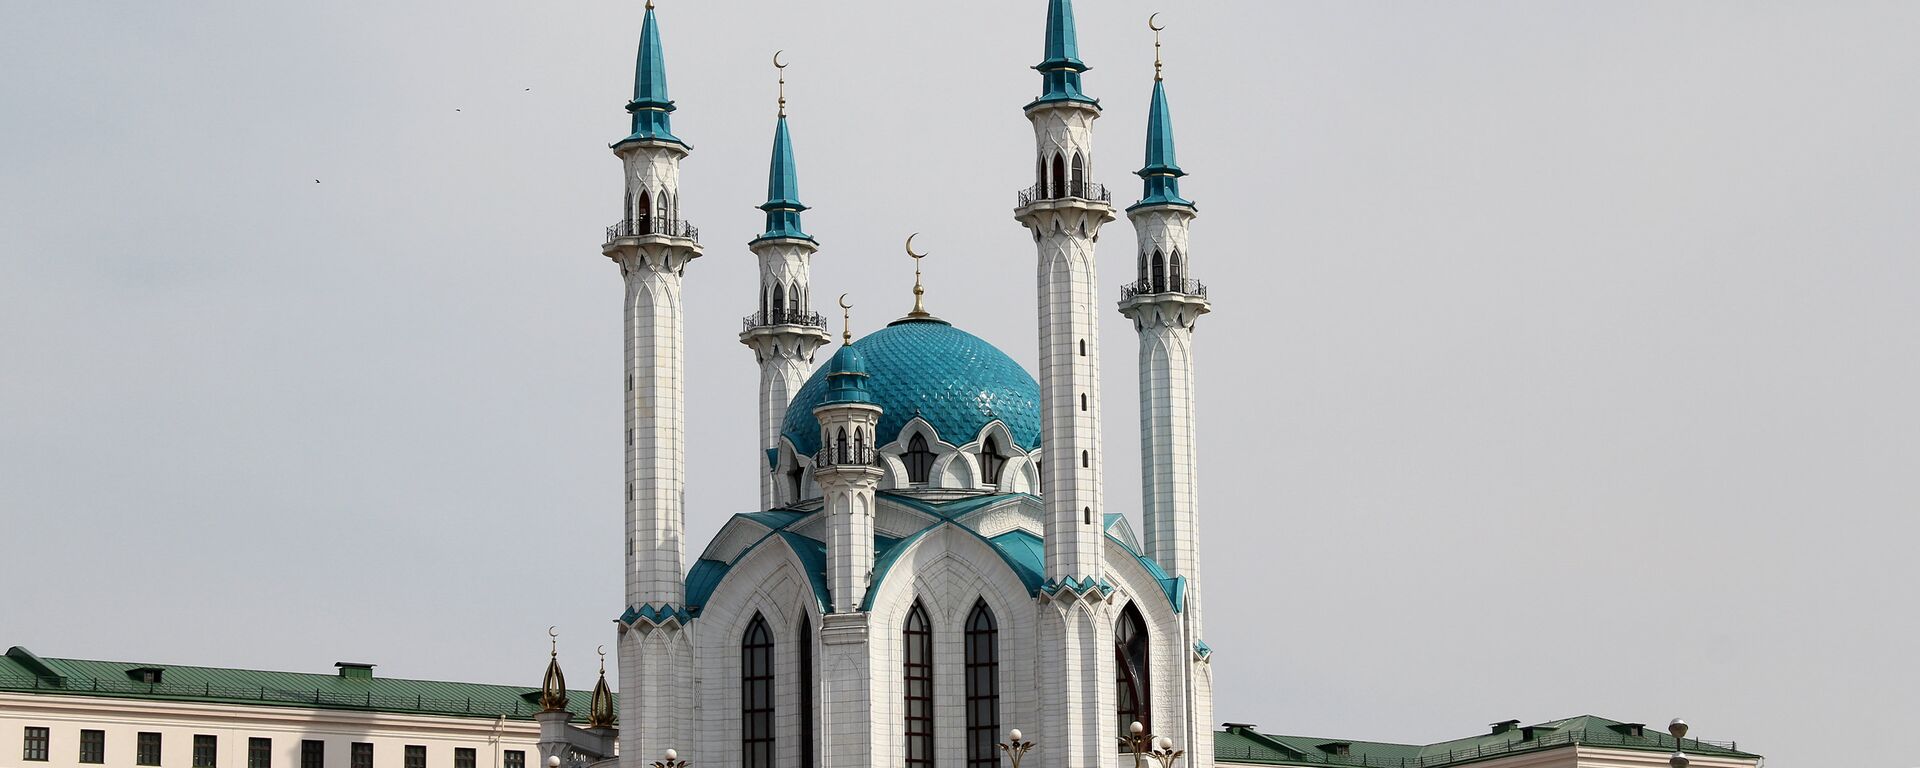 Кул-Шариф — главная соборная мечеть республики Татарстан расположена на территории Казанского кремля - Sputnik Узбекистан, 1920, 20.05.2021